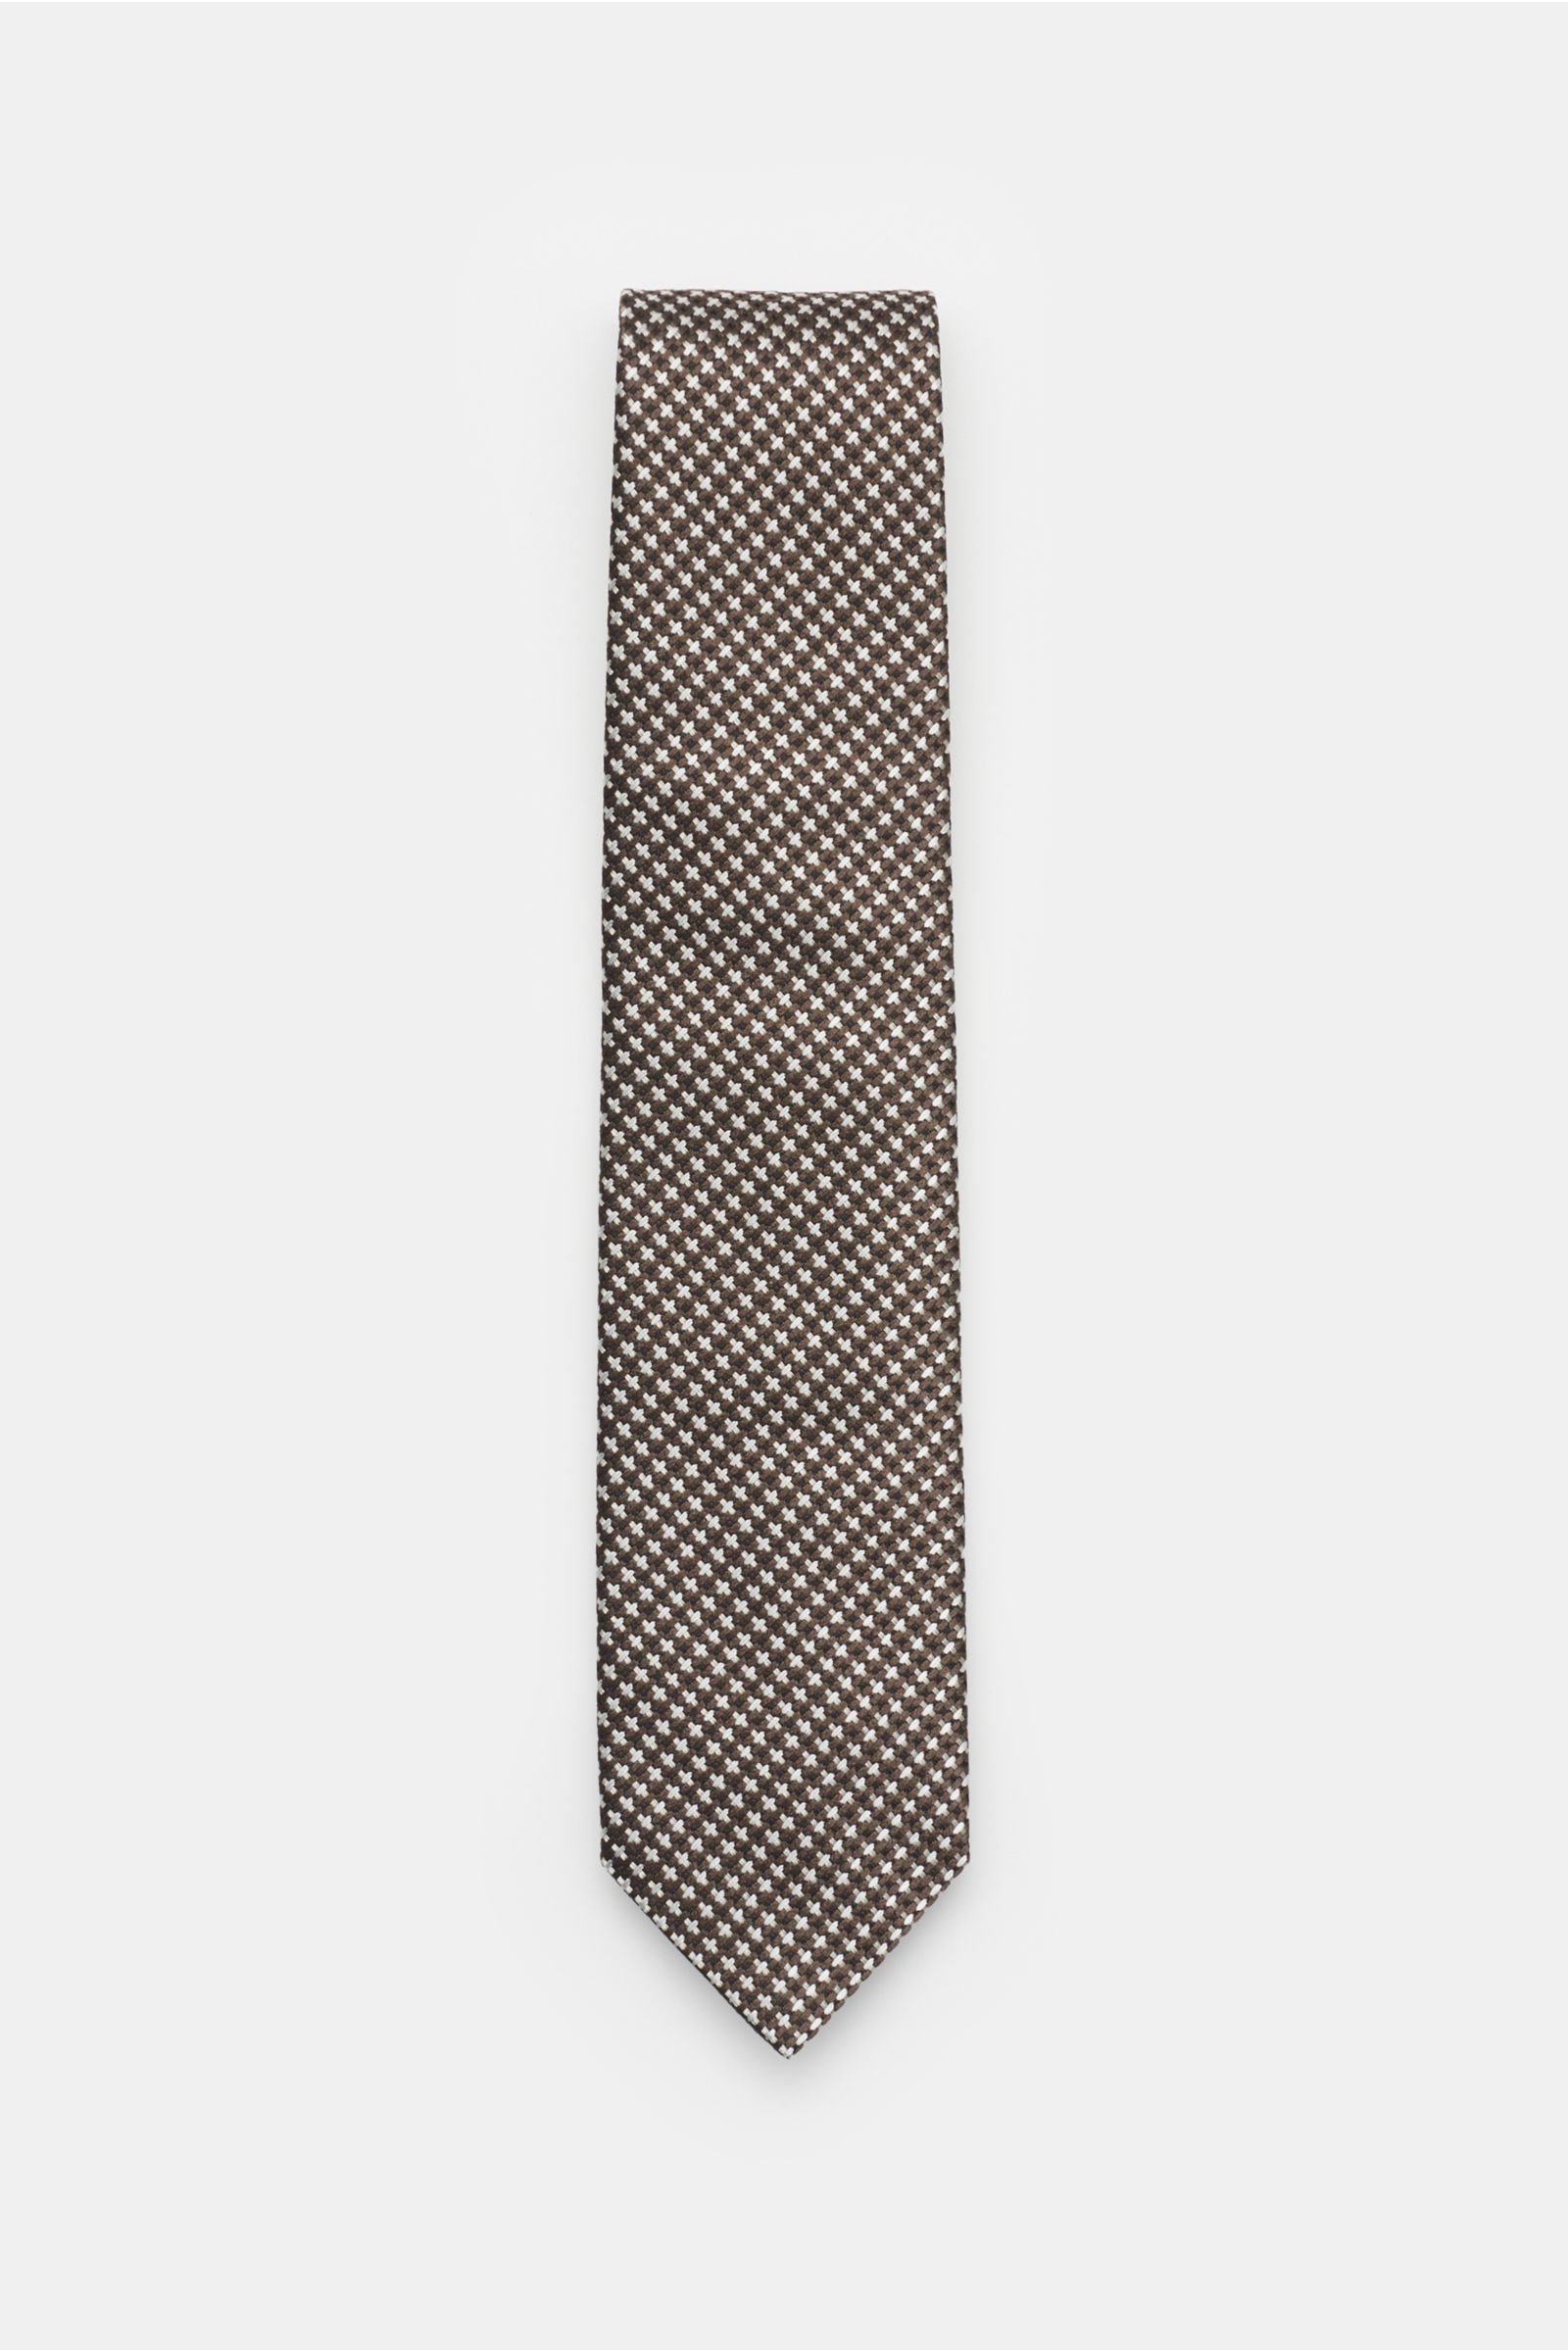 Silk tie brown/grey patterned